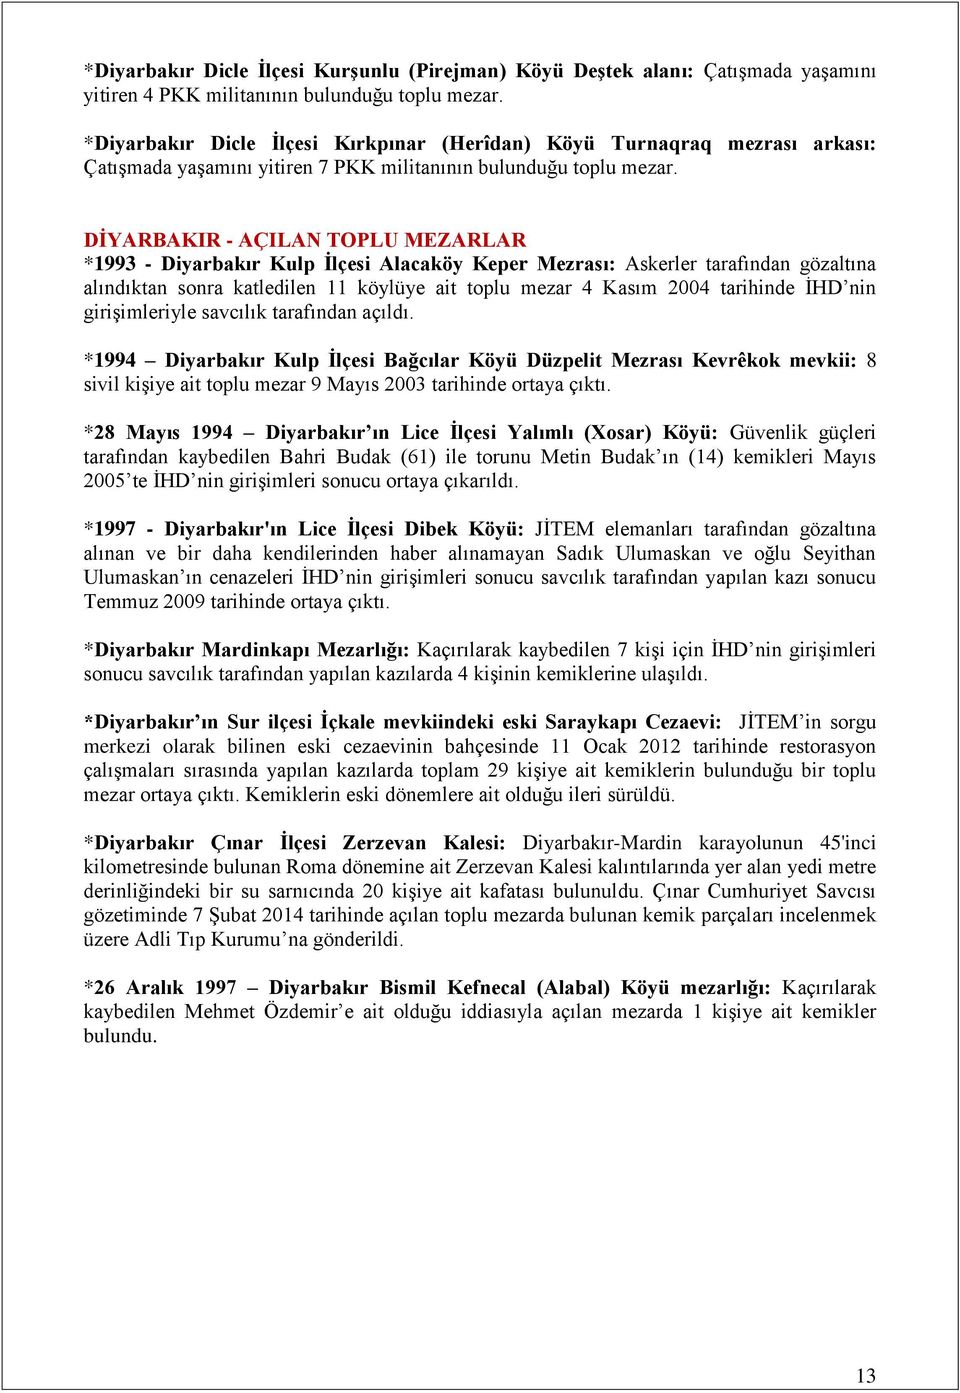 DĠYARBAKIR - AÇILAN TOPLU MEZARLAR *1993 - Diyarbakır Kulp Ġlçesi Alacaköy Keper Mezrası: Askerler tarafından gözaltına alındıktan sonra katledilen 11 köylüye ait toplu mezar 4 Kasım 2004 tarihinde